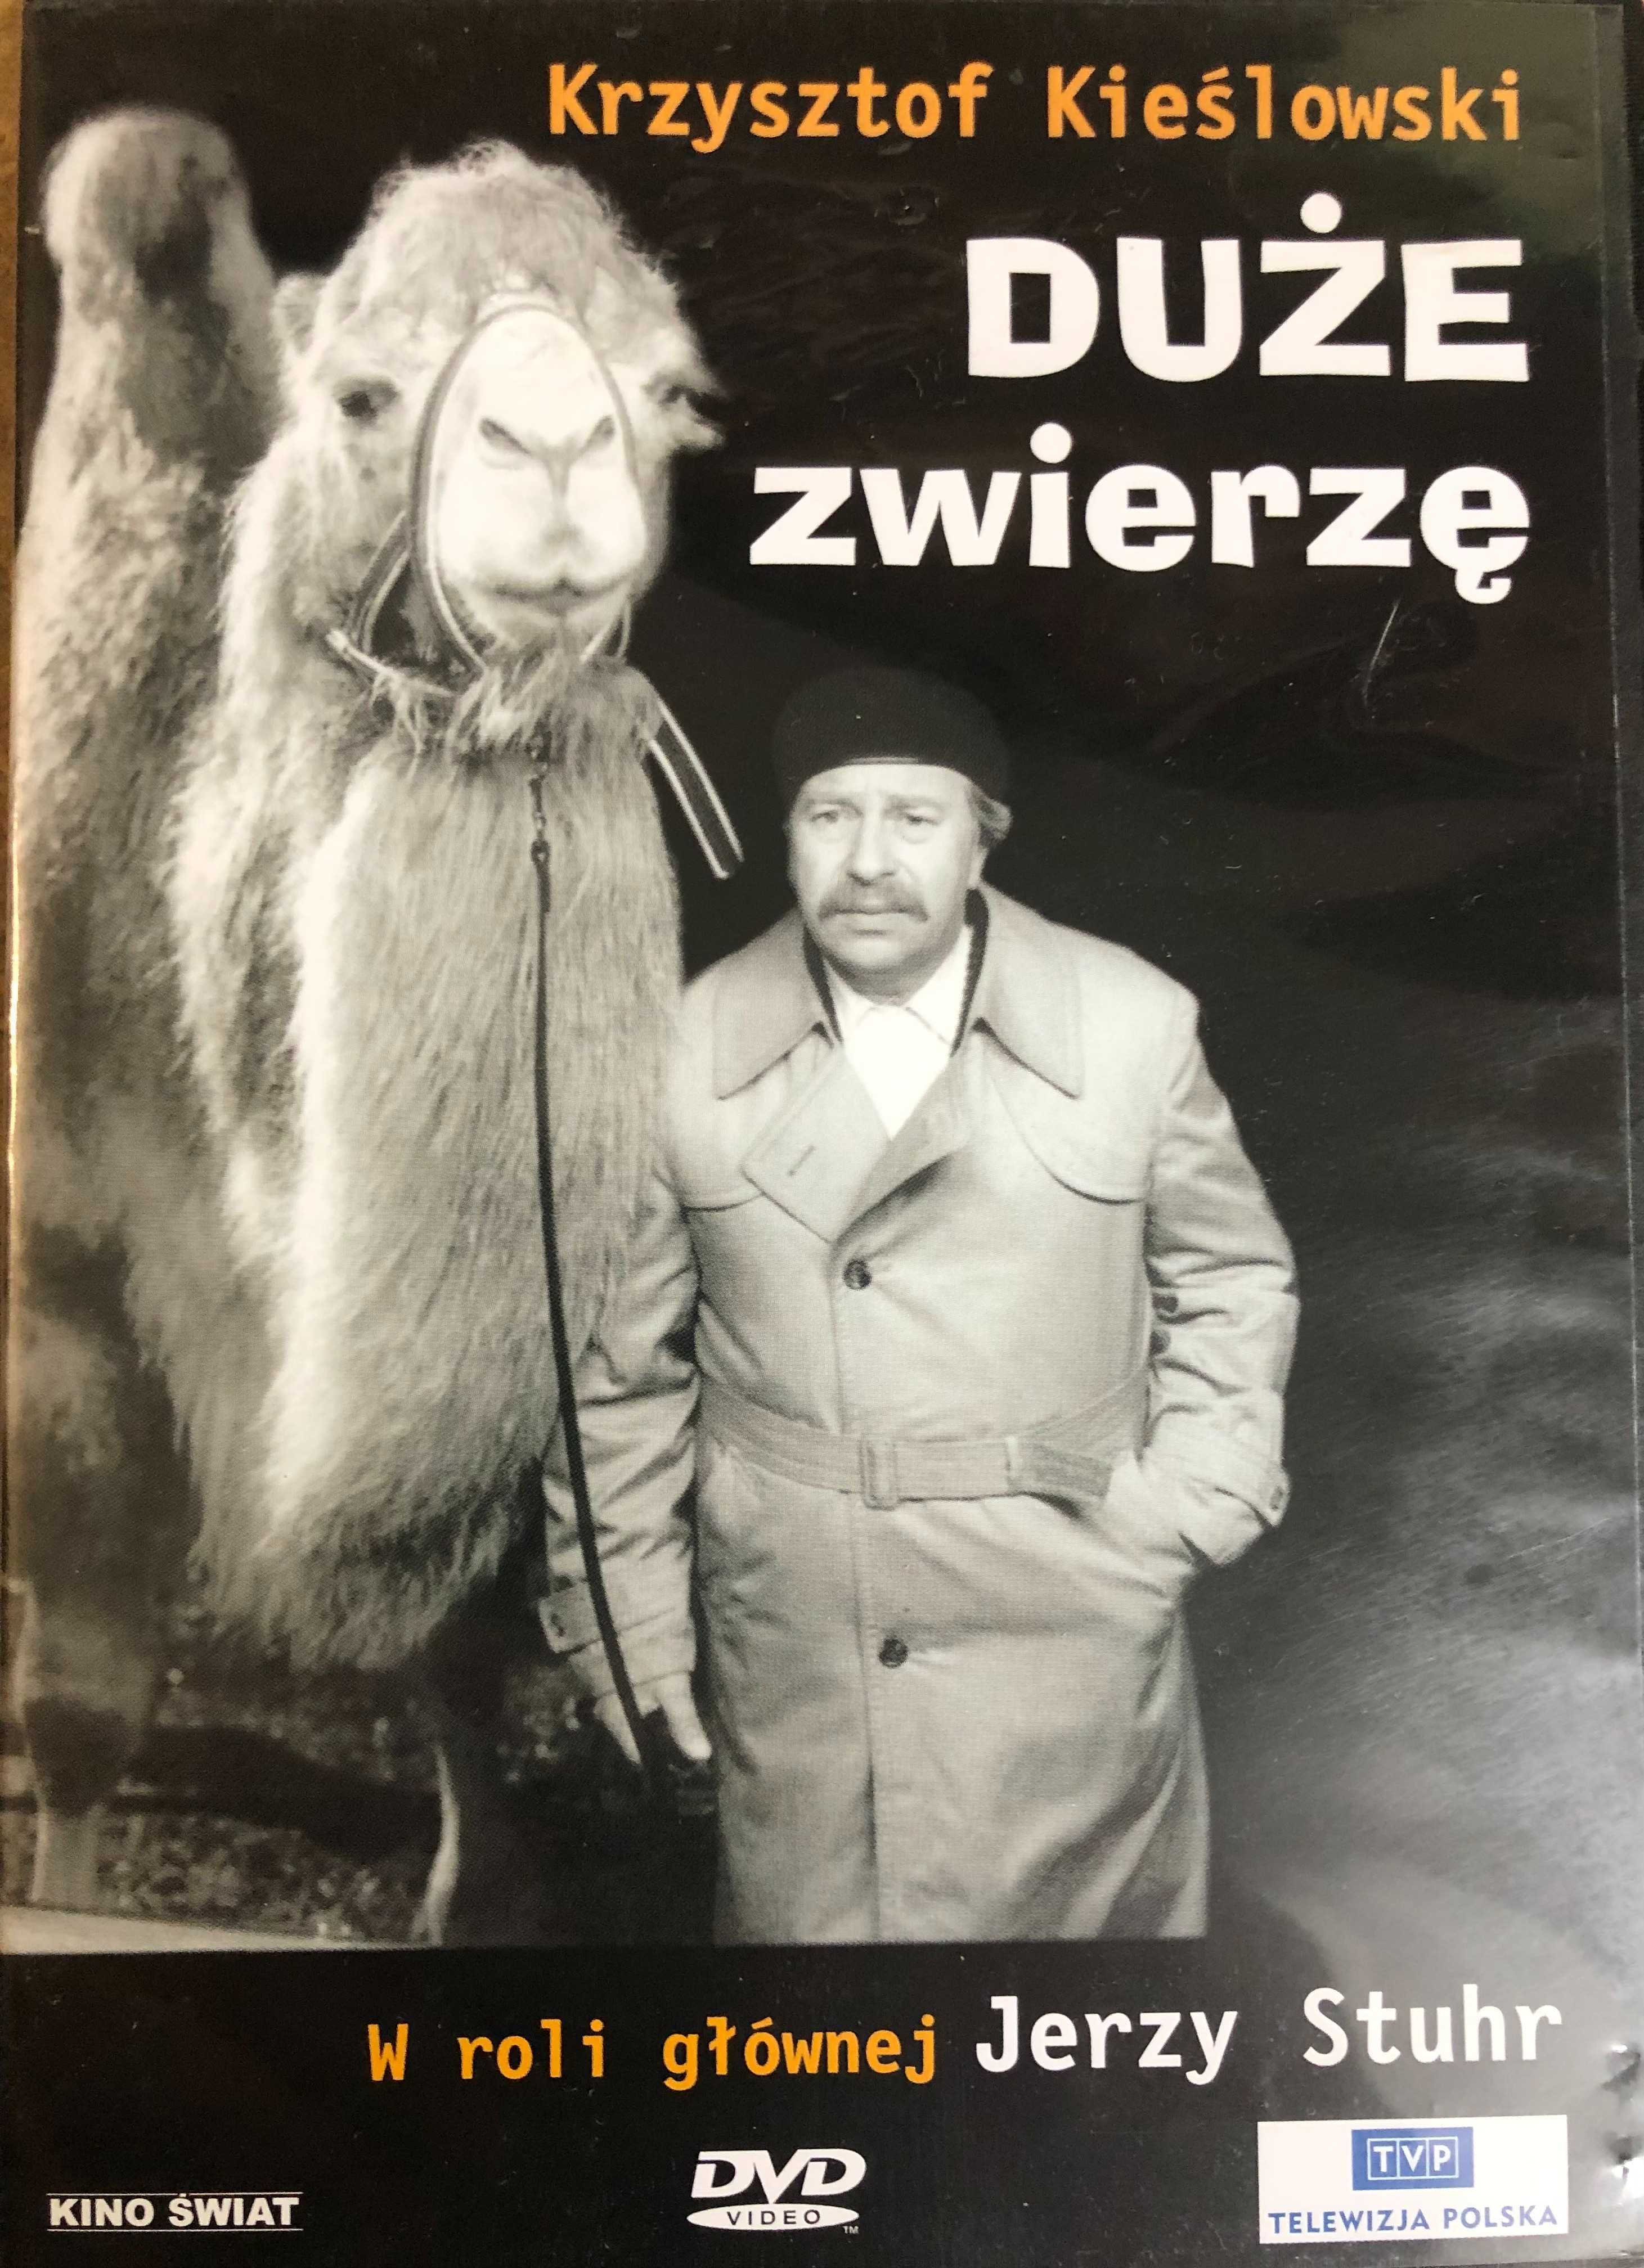 DVD Duże zwierzę Krzysztof Kieślowski Jerzy Stuhr